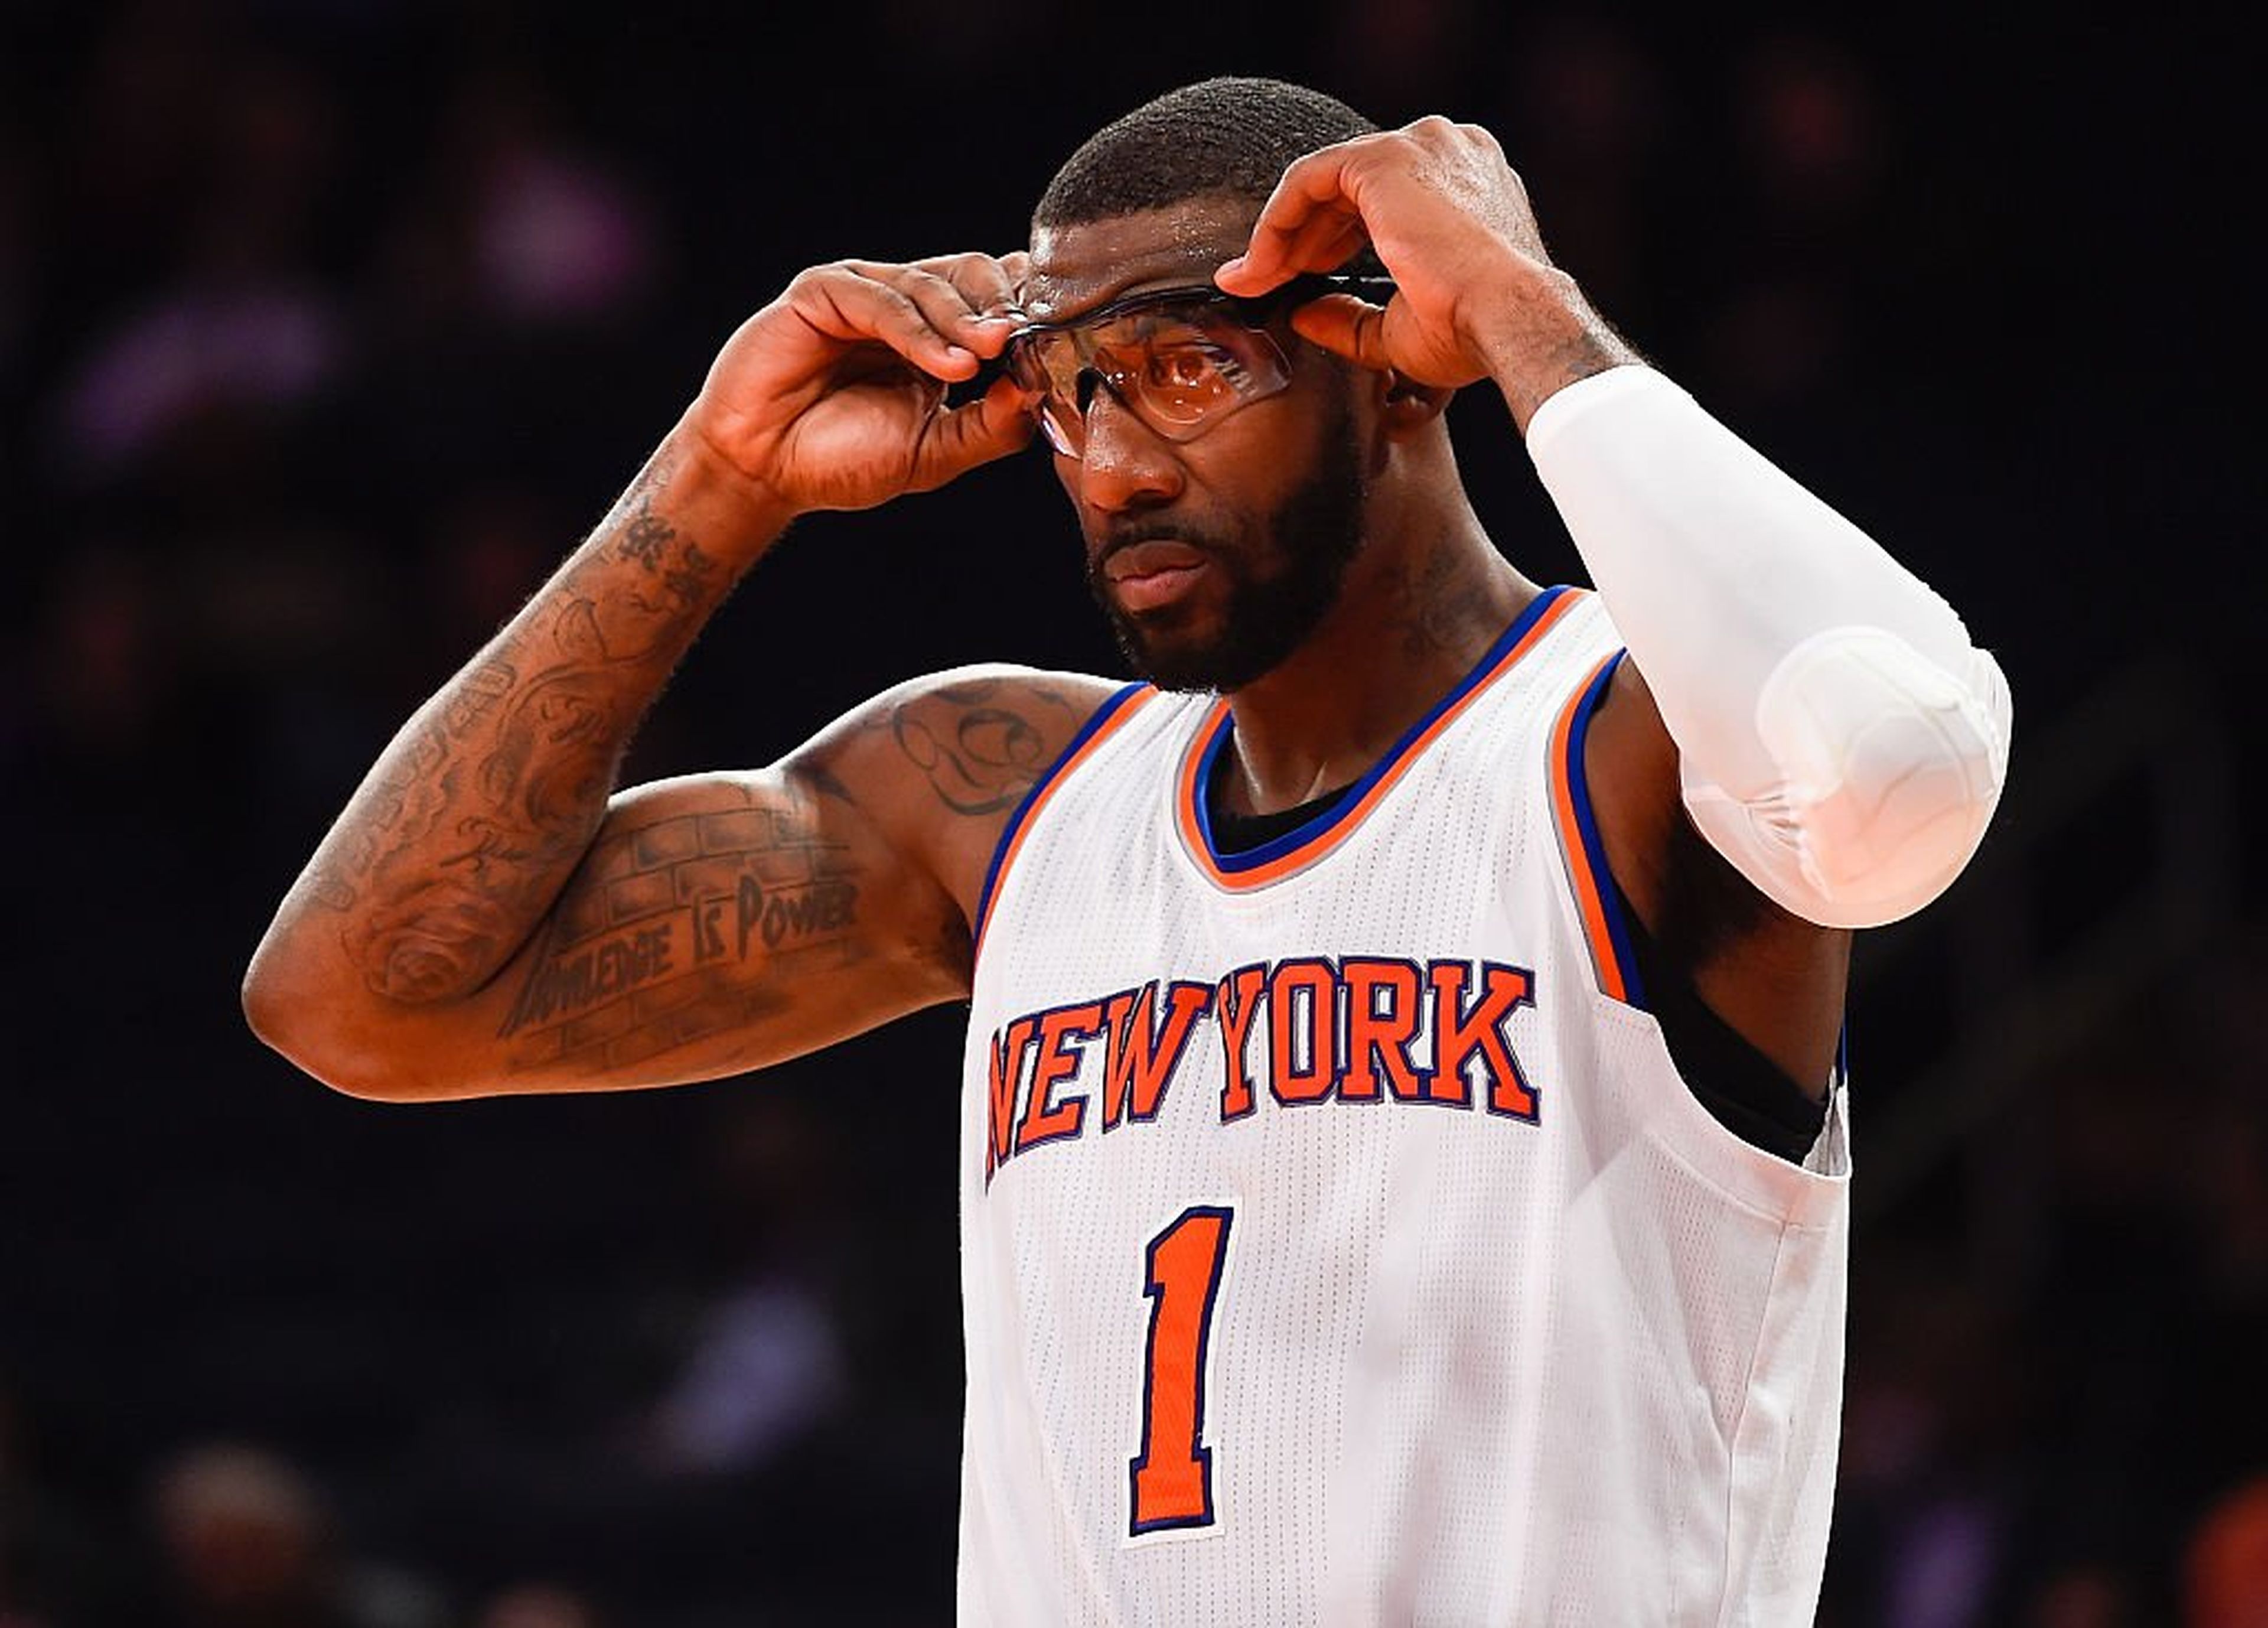 El jugador de baloncesto de la NBA Amar'e Stoudemire en un partido de los New York Knicks.